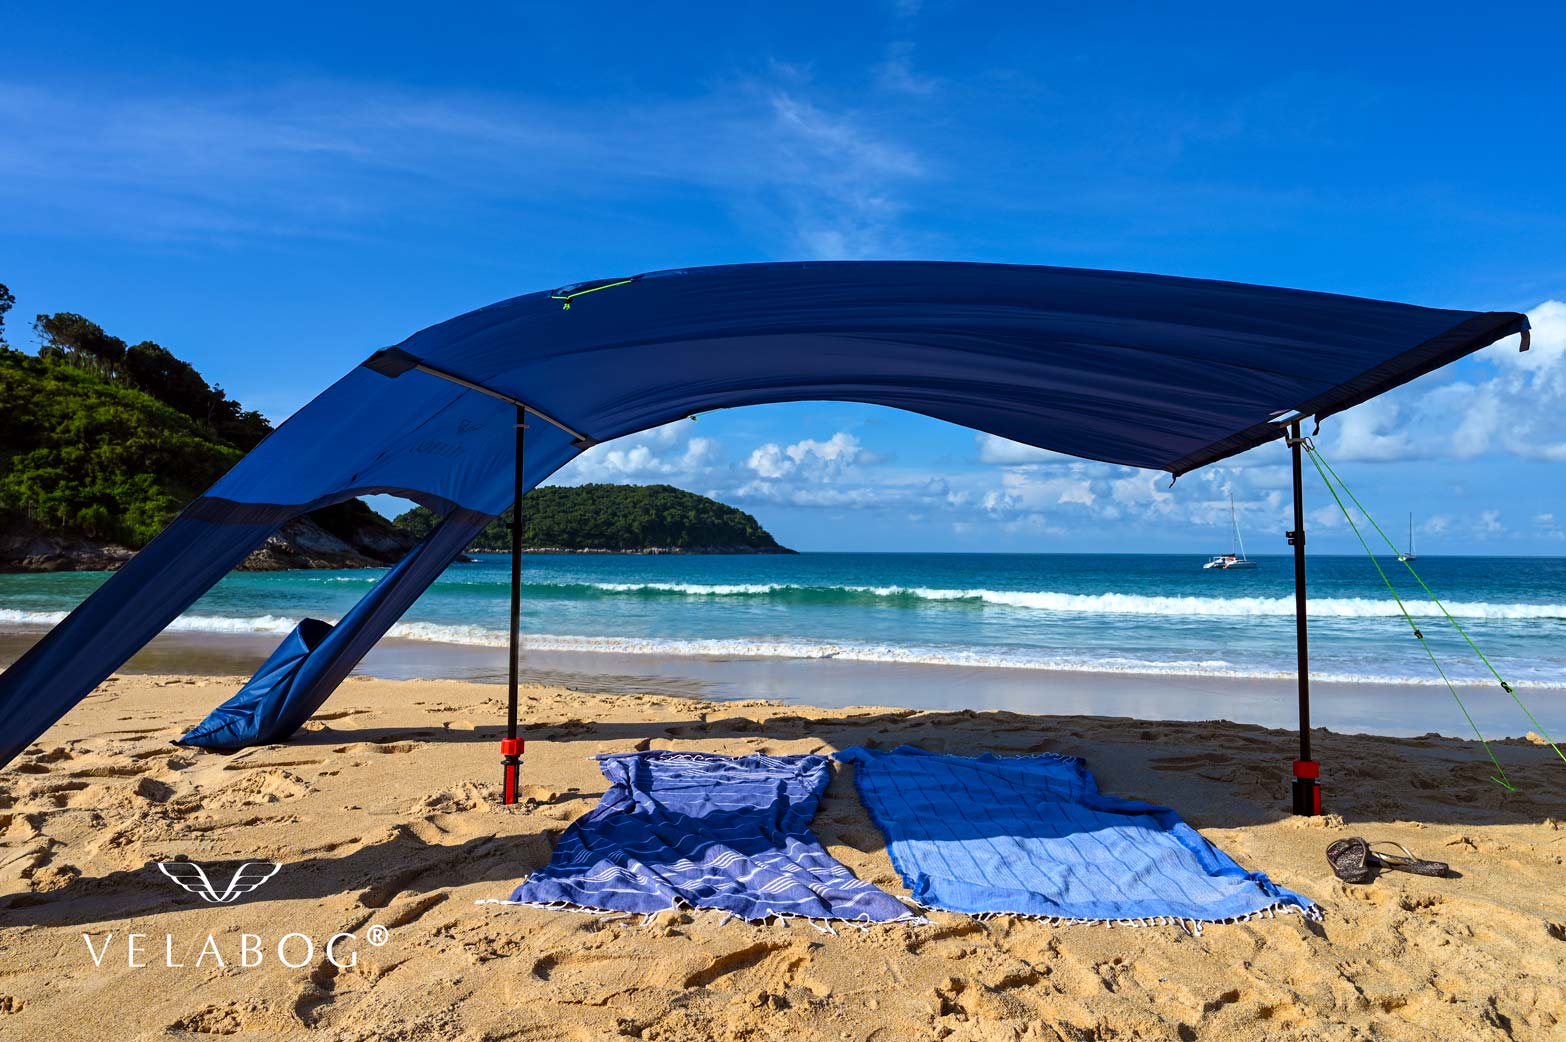 Voile d’ombrage tente plage Velabog Breeze, bleu nuit. Protection anti-UV pour la plage d’une excellente résistance au vent, qu’il soit faible ou fort. Option de montage avec le kit d’extension quand il n’y a pas de vent, par vents faibles ou en rafales. Le meilleur auvent de plage. Vue latérale. Zoom.